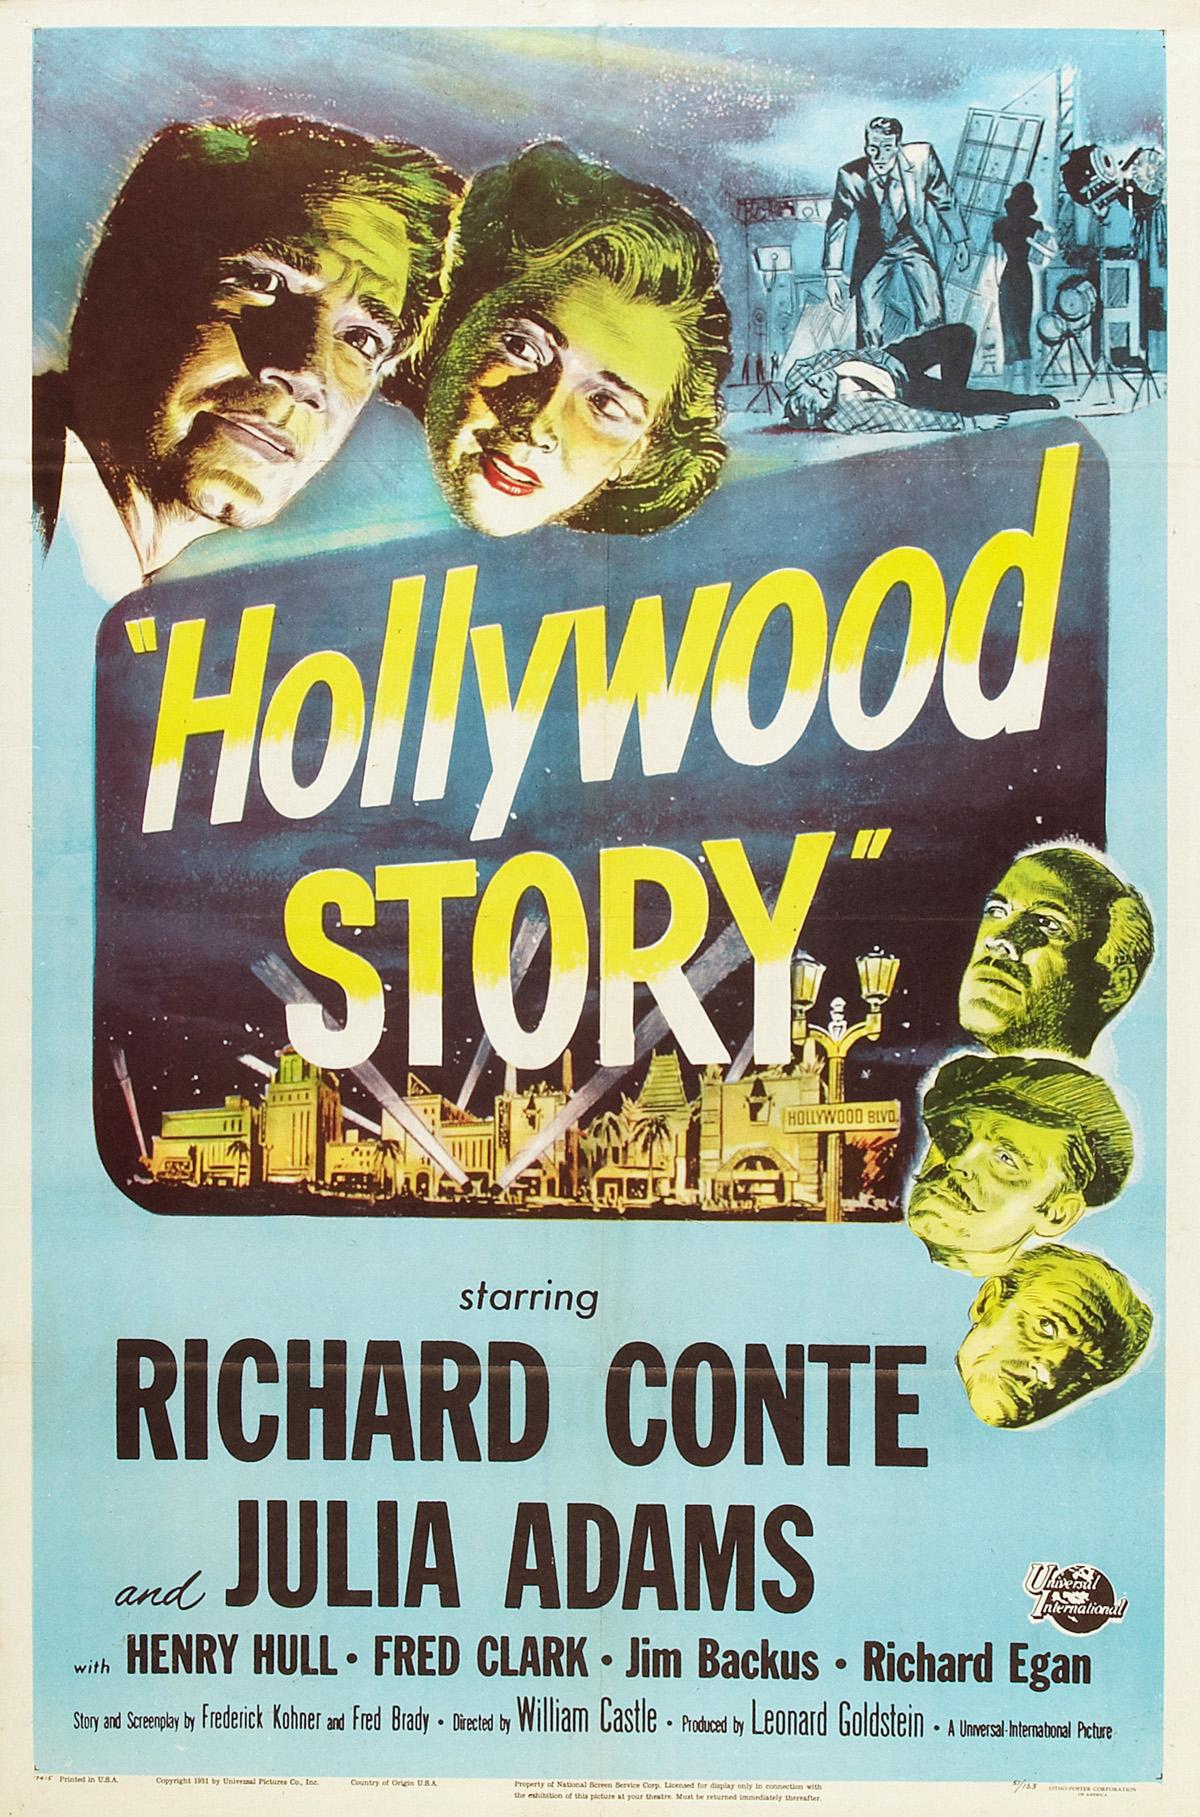 فيلم Hollywood Story اسمه بالترجمة الحرفية «قصة هوليوود» وتُرْجِم تجاريًا بـ {قصة السينما}